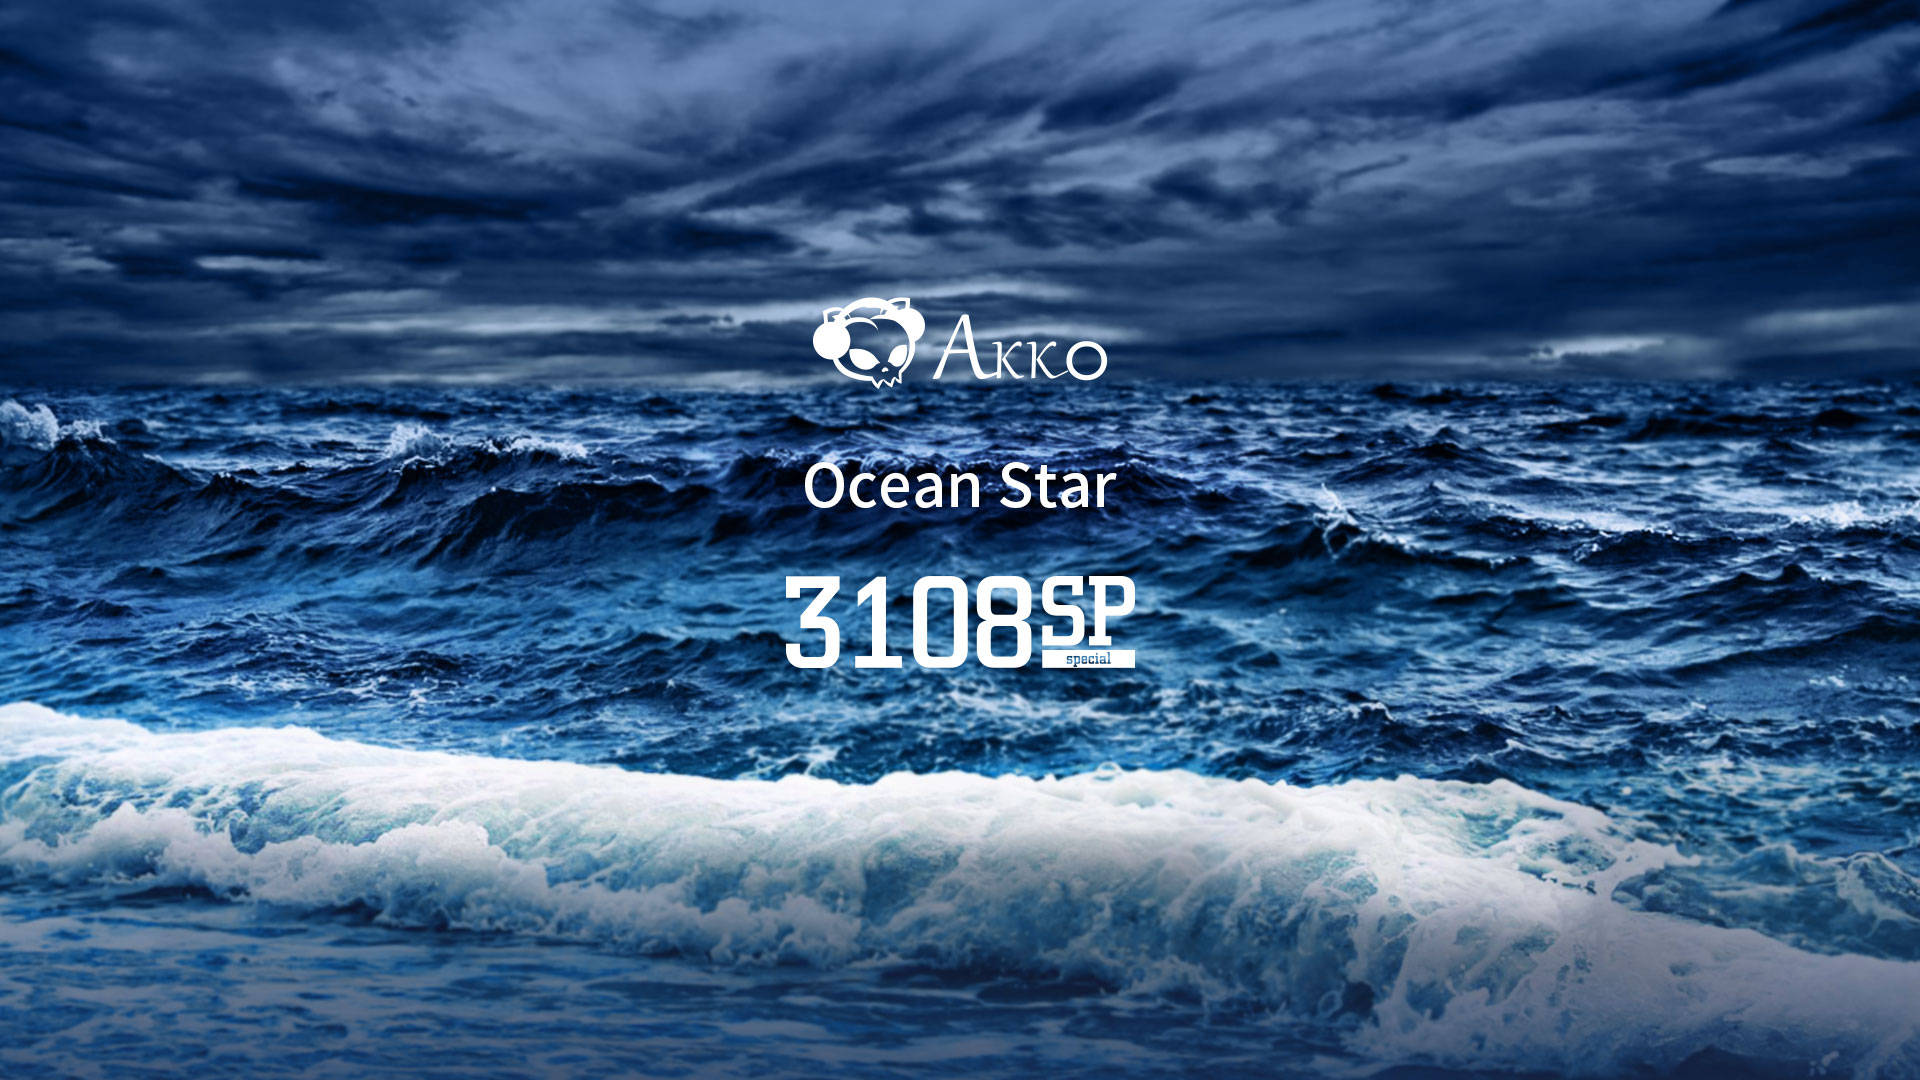 Океан сп новокузнецк совместные. Star Ocean. Akko 3087ds Ocean Star. СП оушен. Океан браузер.